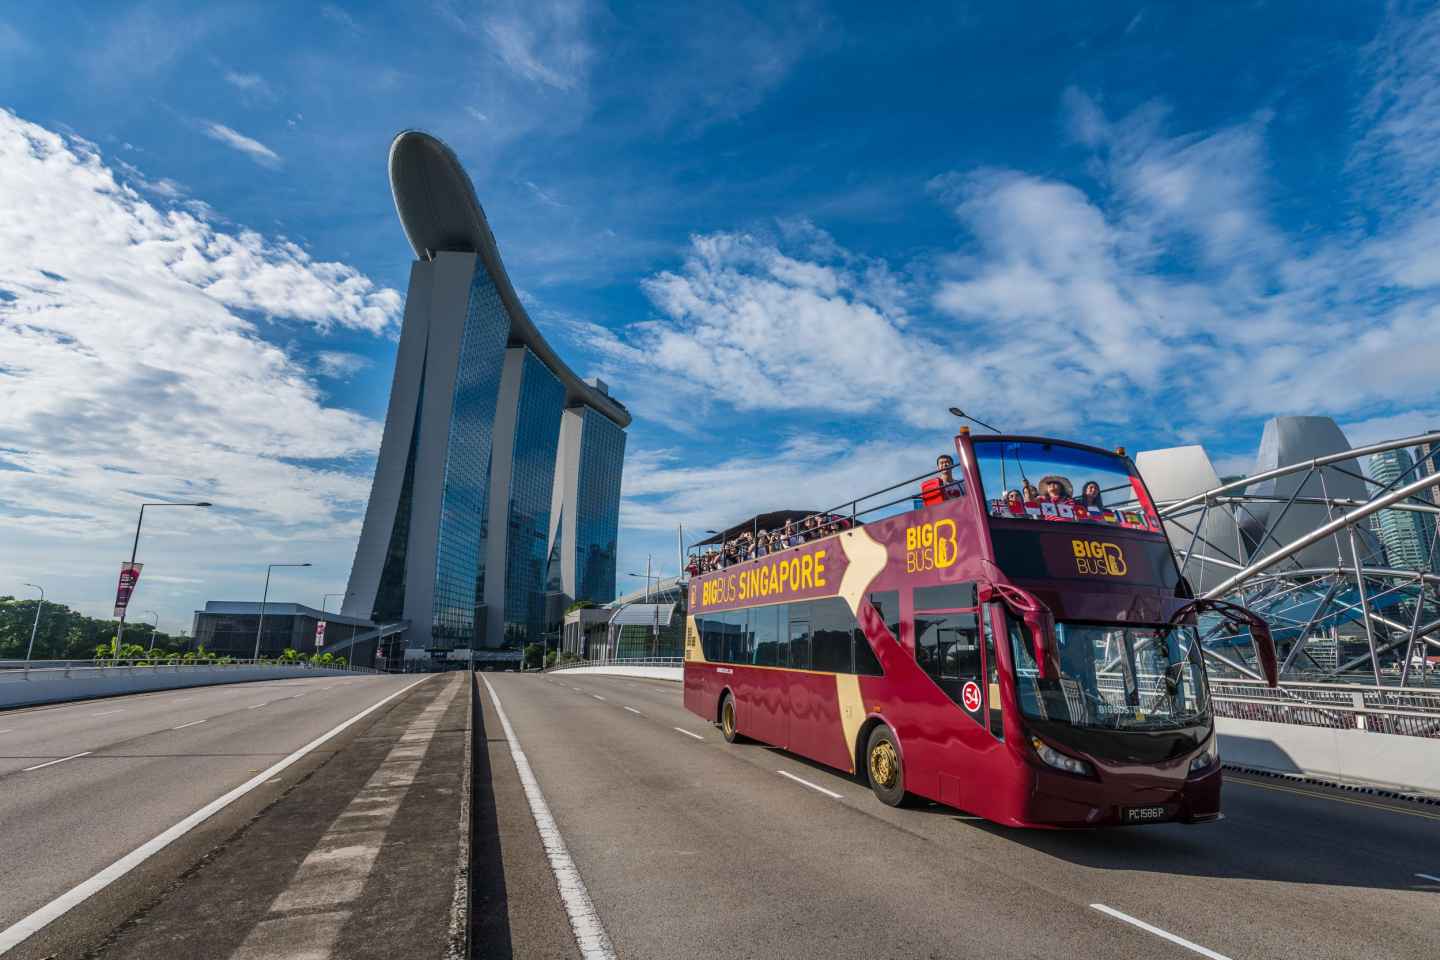 Singapur: Stadtrundfahrt mit offenem Bus und Kulturerbe